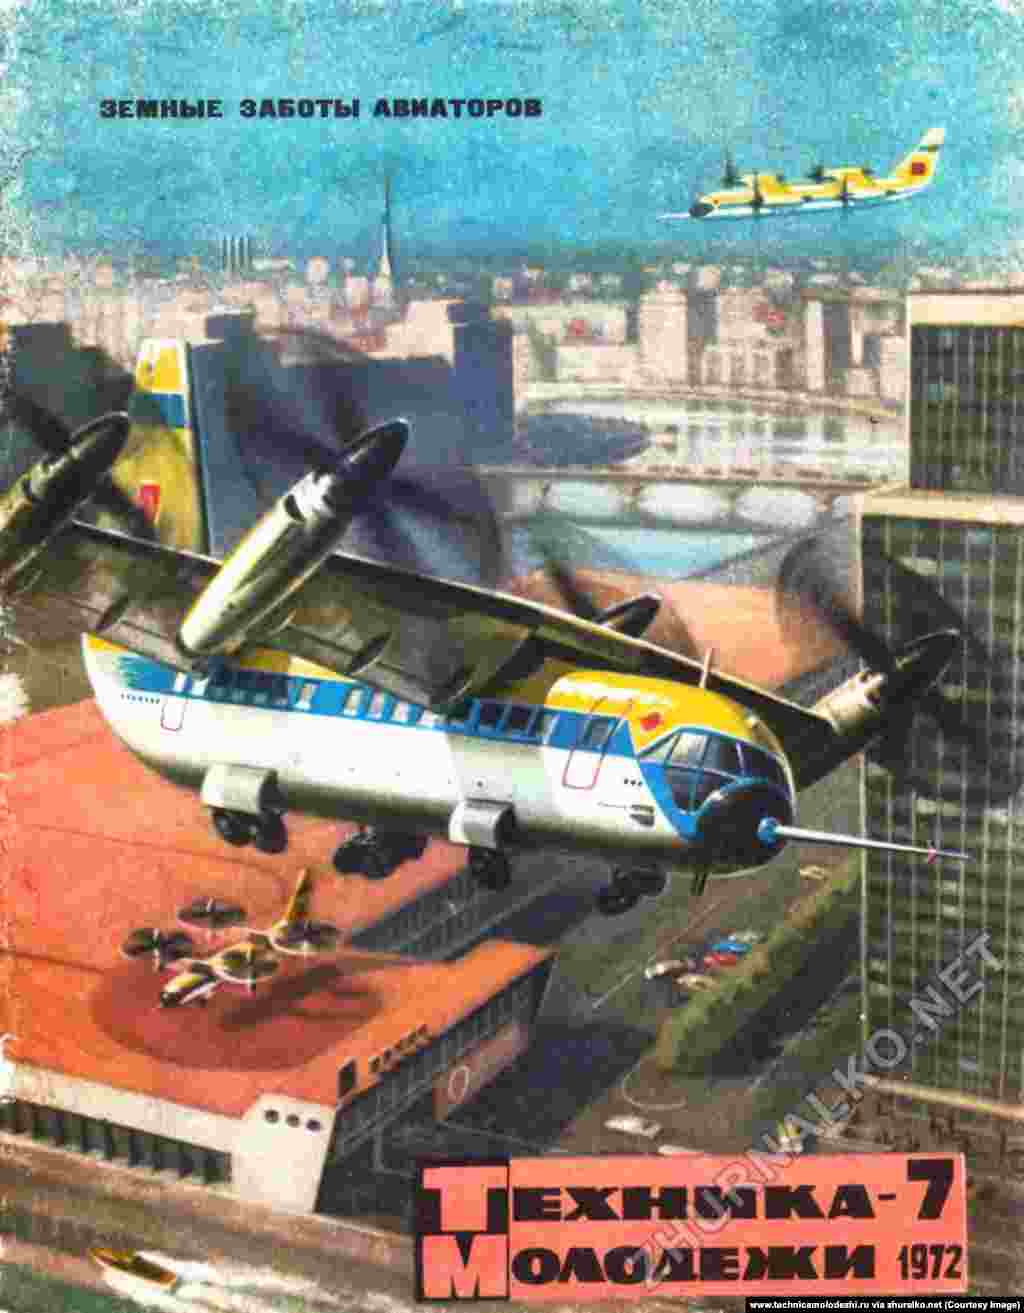 Самолет с вертикальным взлетом и посадкой, нарисованный за 17 лет до первого полета похожего на это изображение воздушного судна Bell Boeing Osprey в США